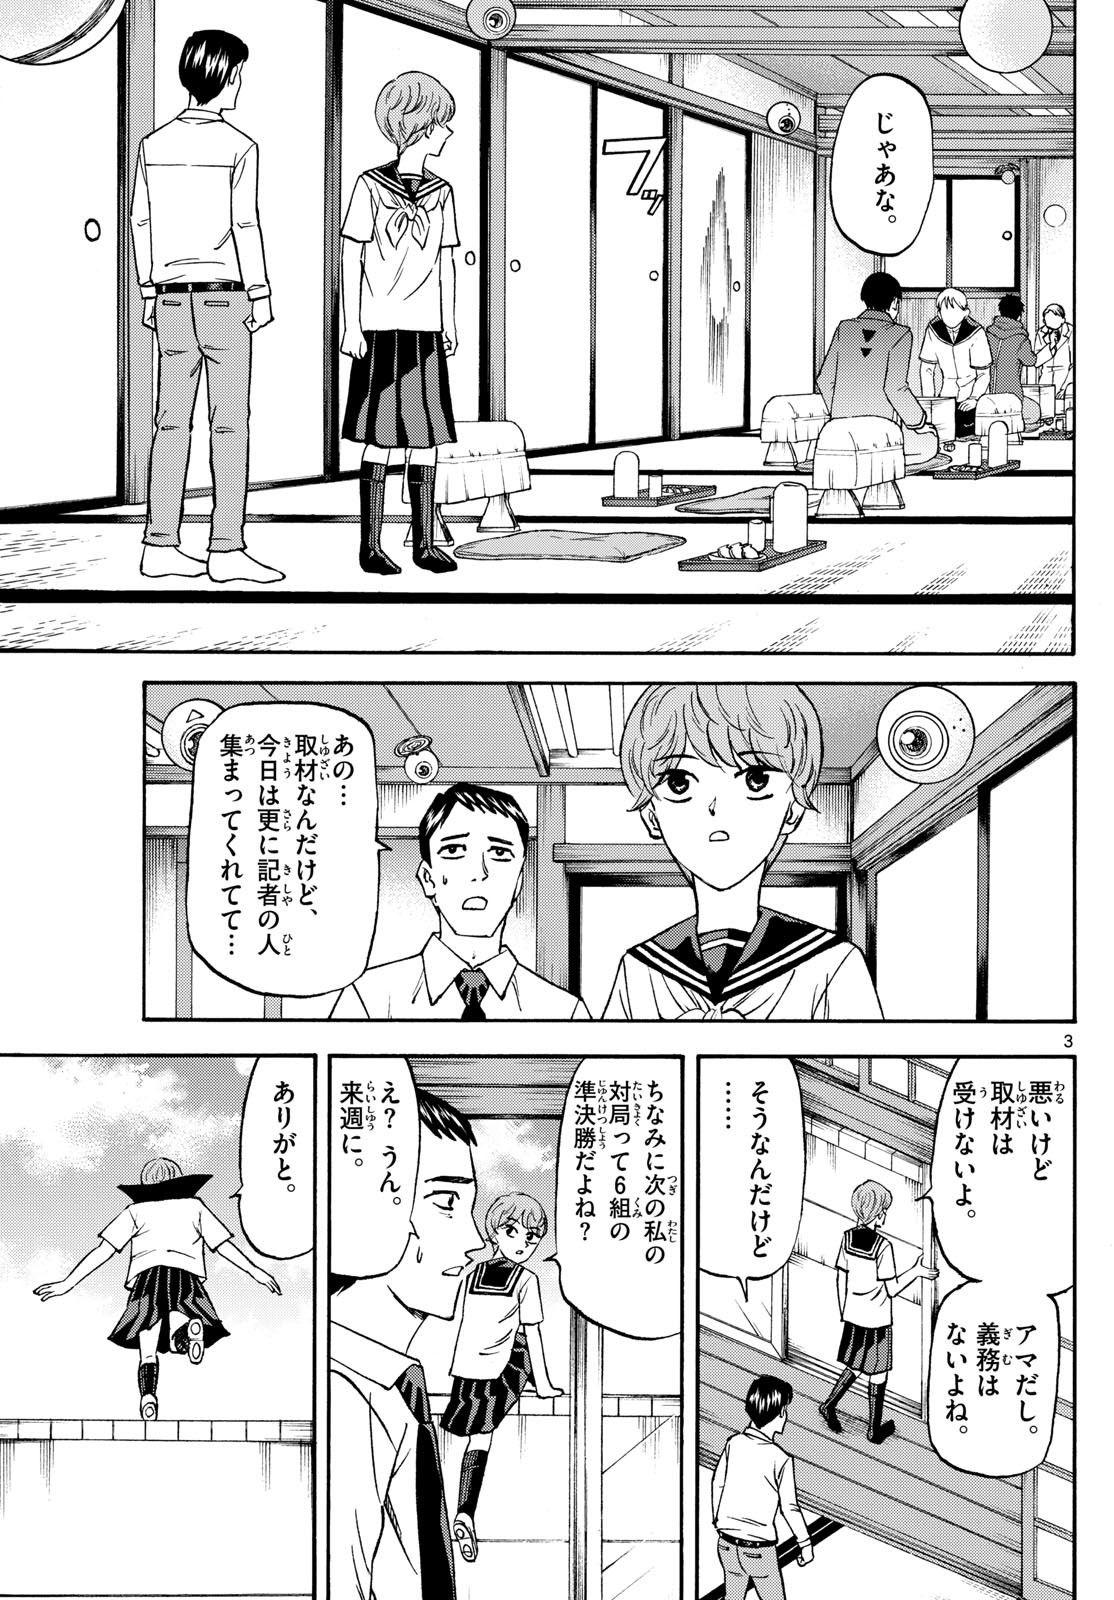 Ryu-to-Ichigo - Chapter 192 - Page 3